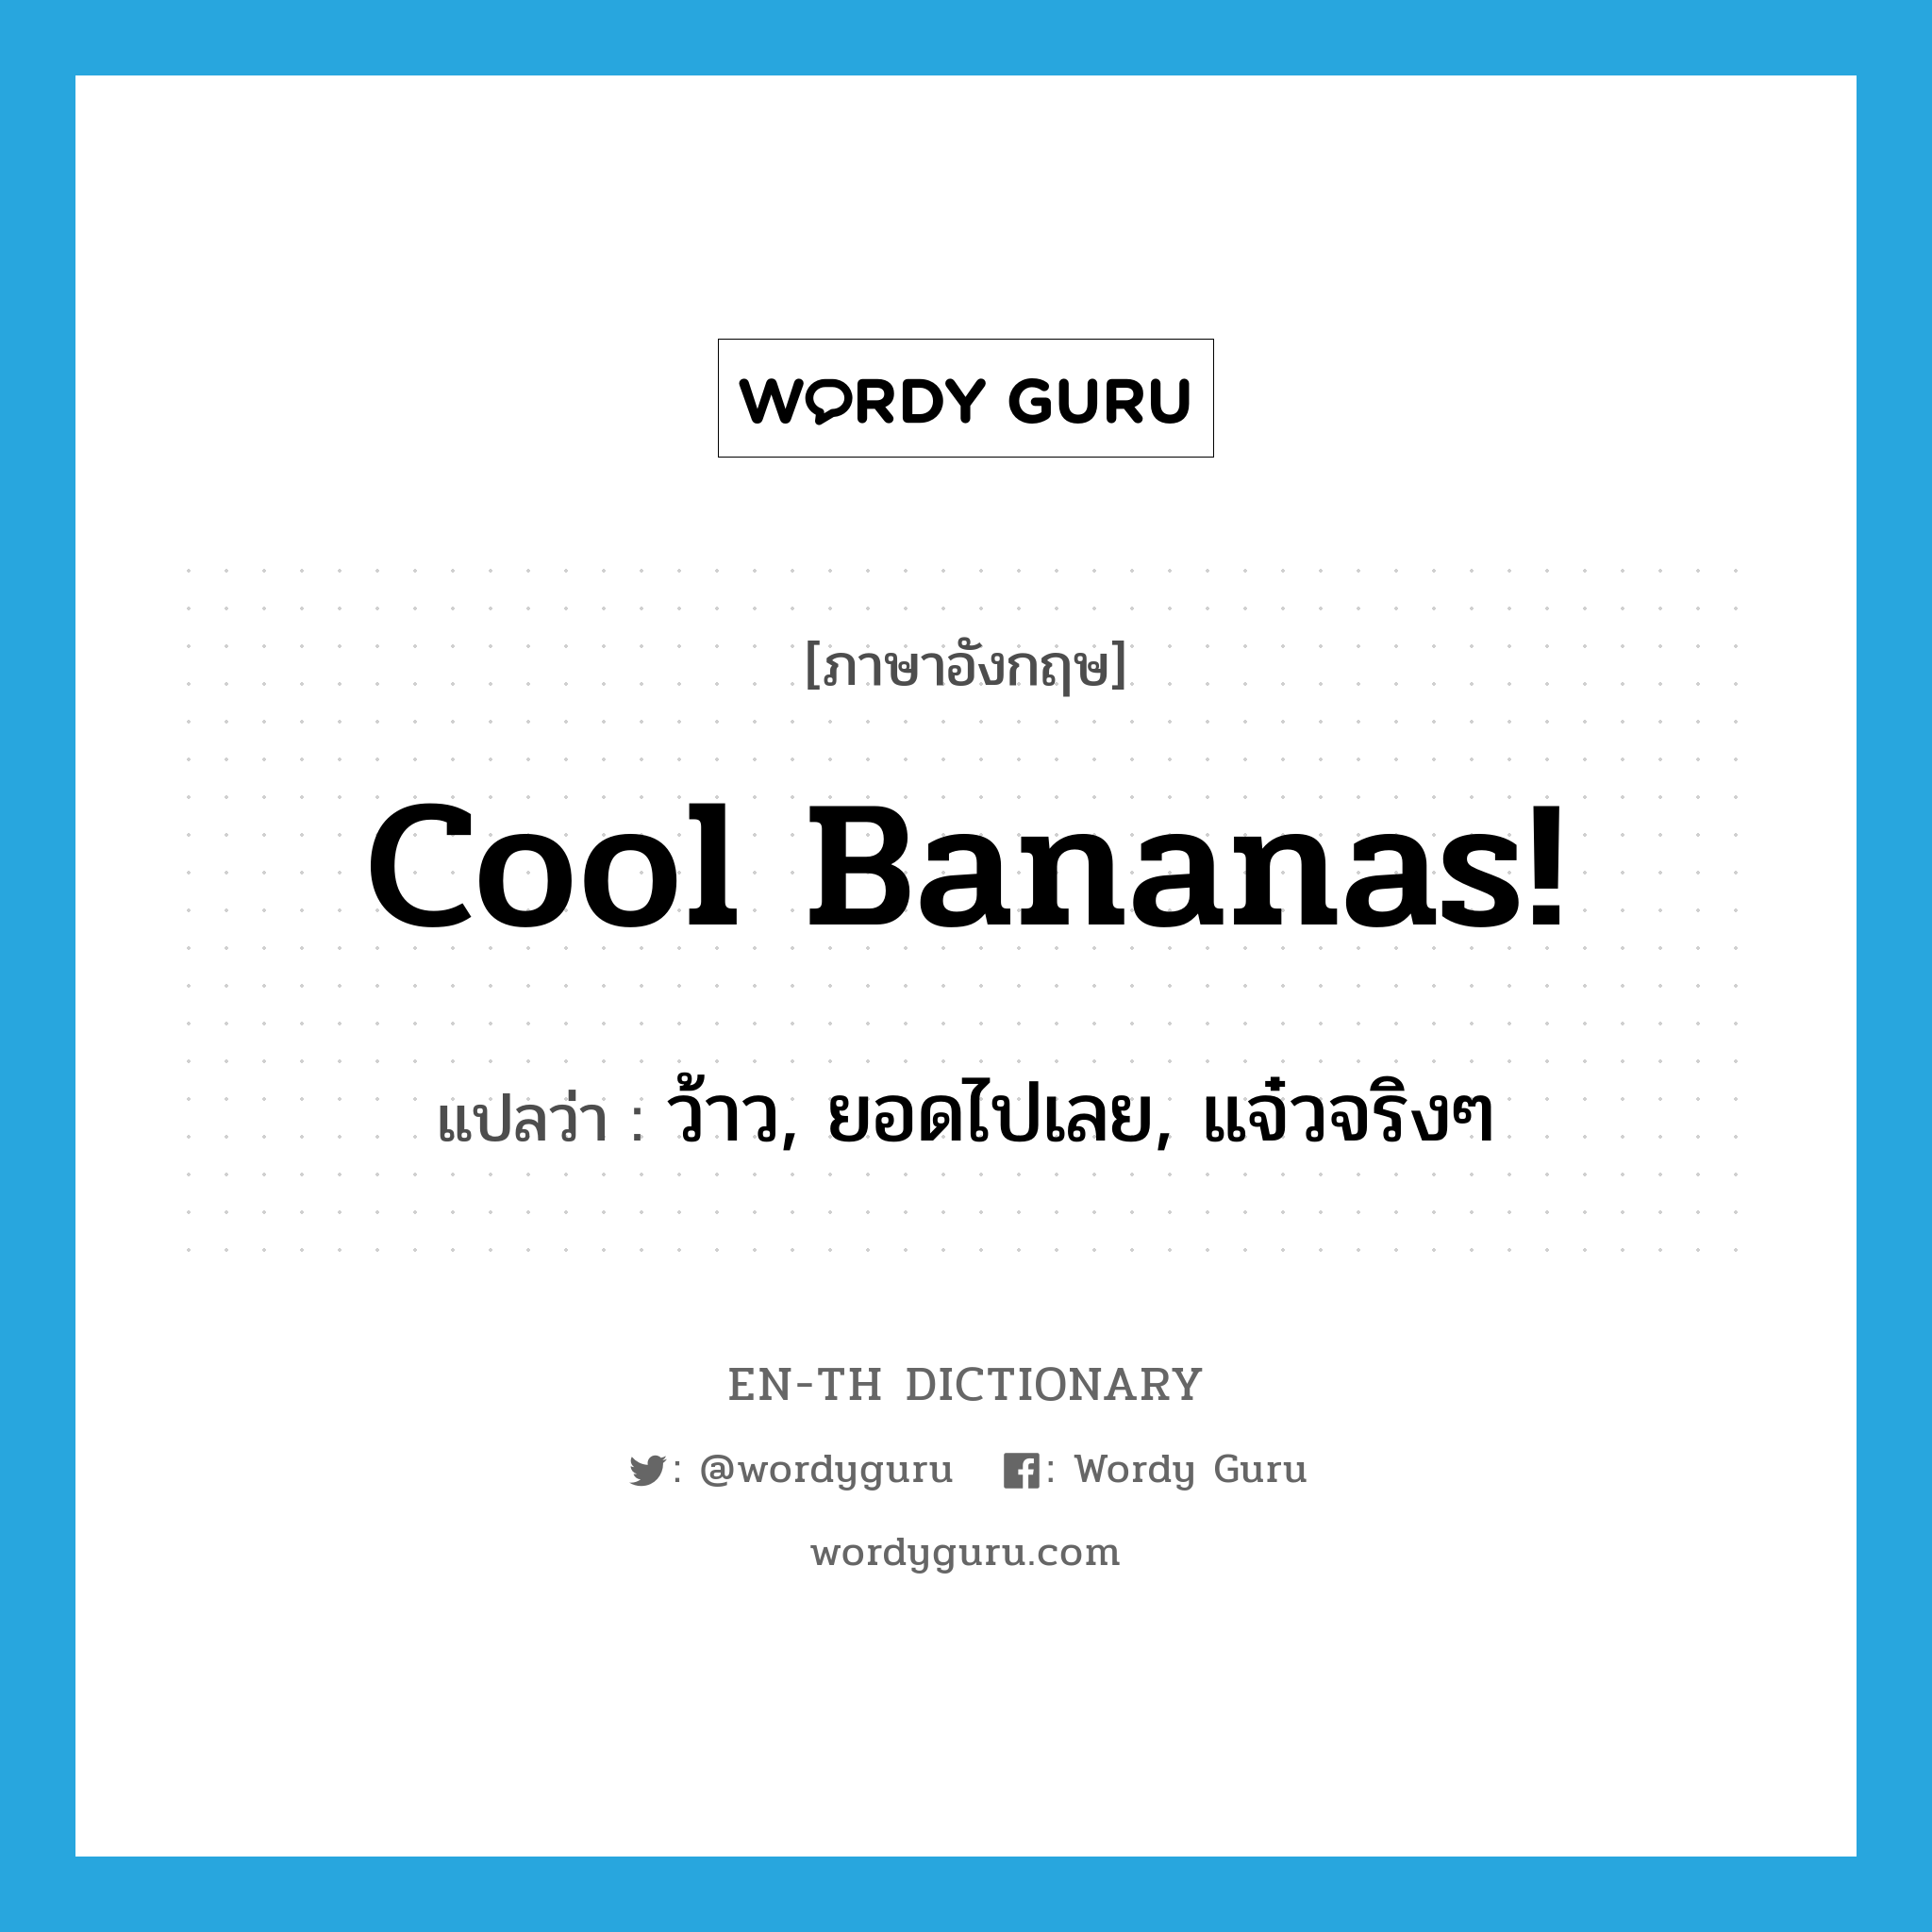 ว้าว, ยอดไปเลย, แจ๋วจริงๆ ภาษาอังกฤษ?, คำศัพท์ภาษาอังกฤษ ว้าว, ยอดไปเลย, แจ๋วจริงๆ แปลว่า Cool bananas! ประเภท SL หมวด SL